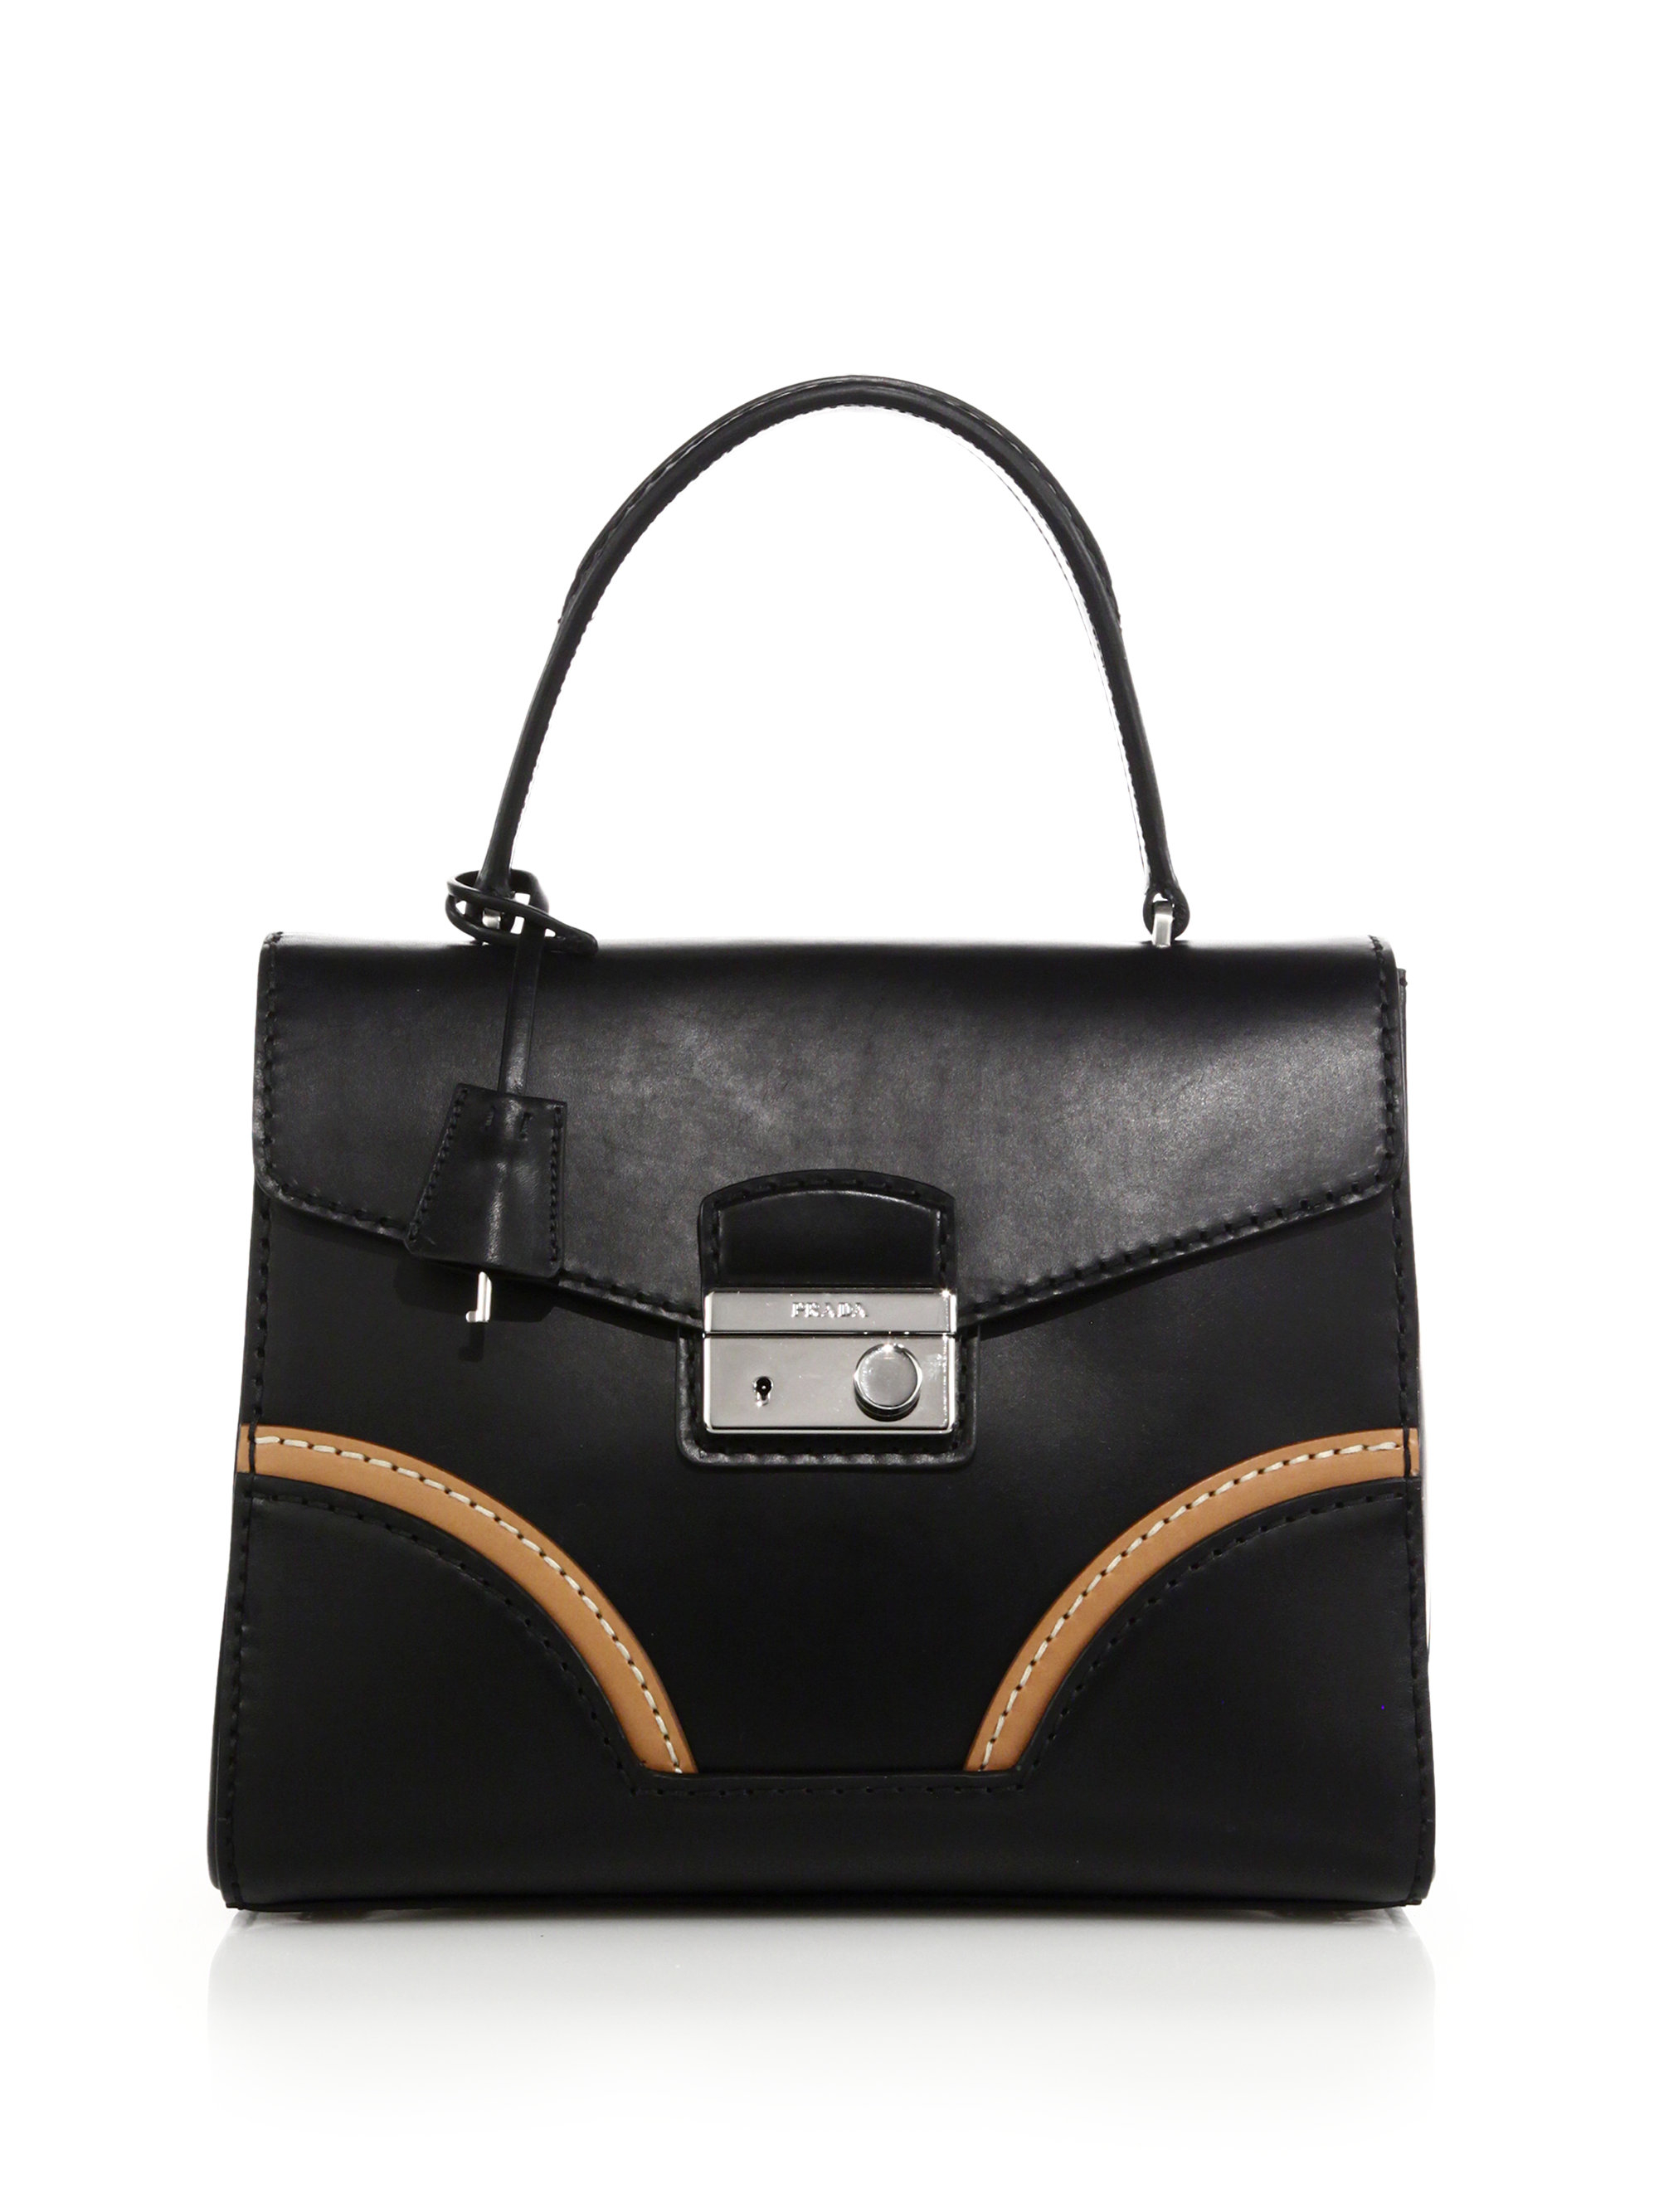 Prada Calf Leather Top-handle Bag in Black (BLACK-TAN) | Lyst  